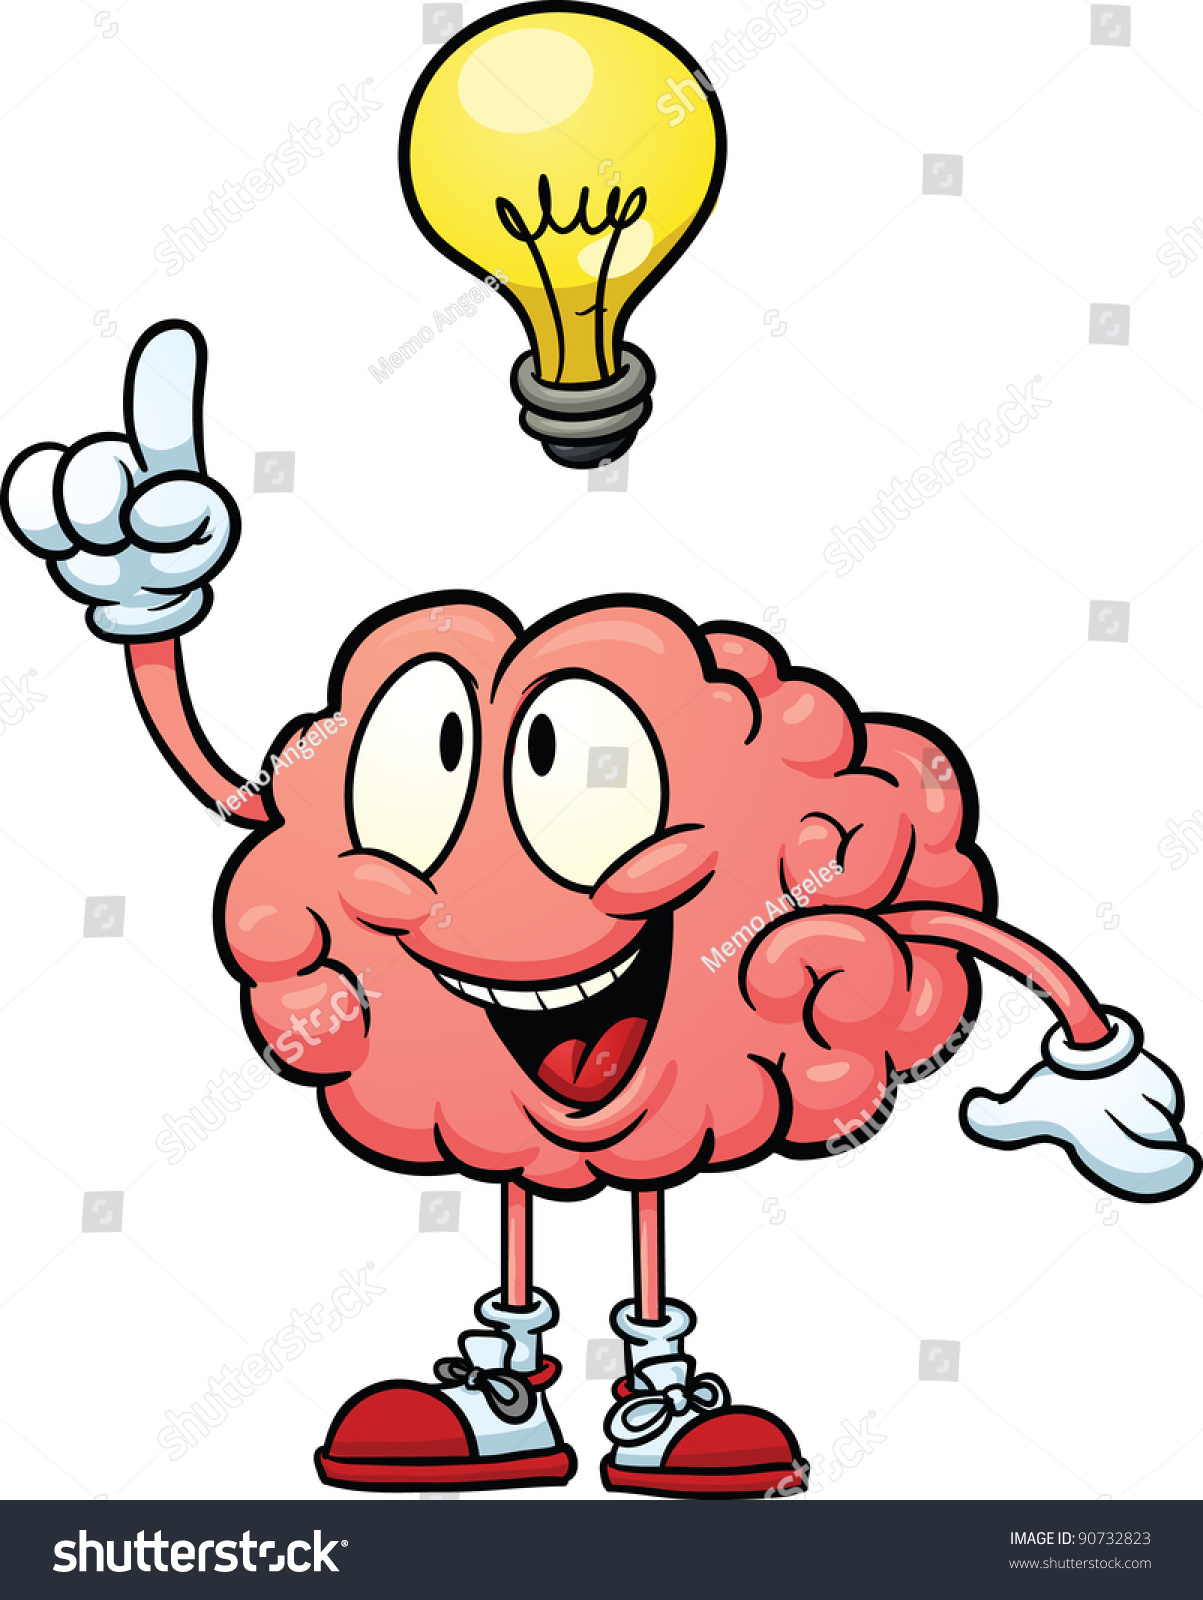 Cute Cartoon Brain With Having An Idea. Vector ...